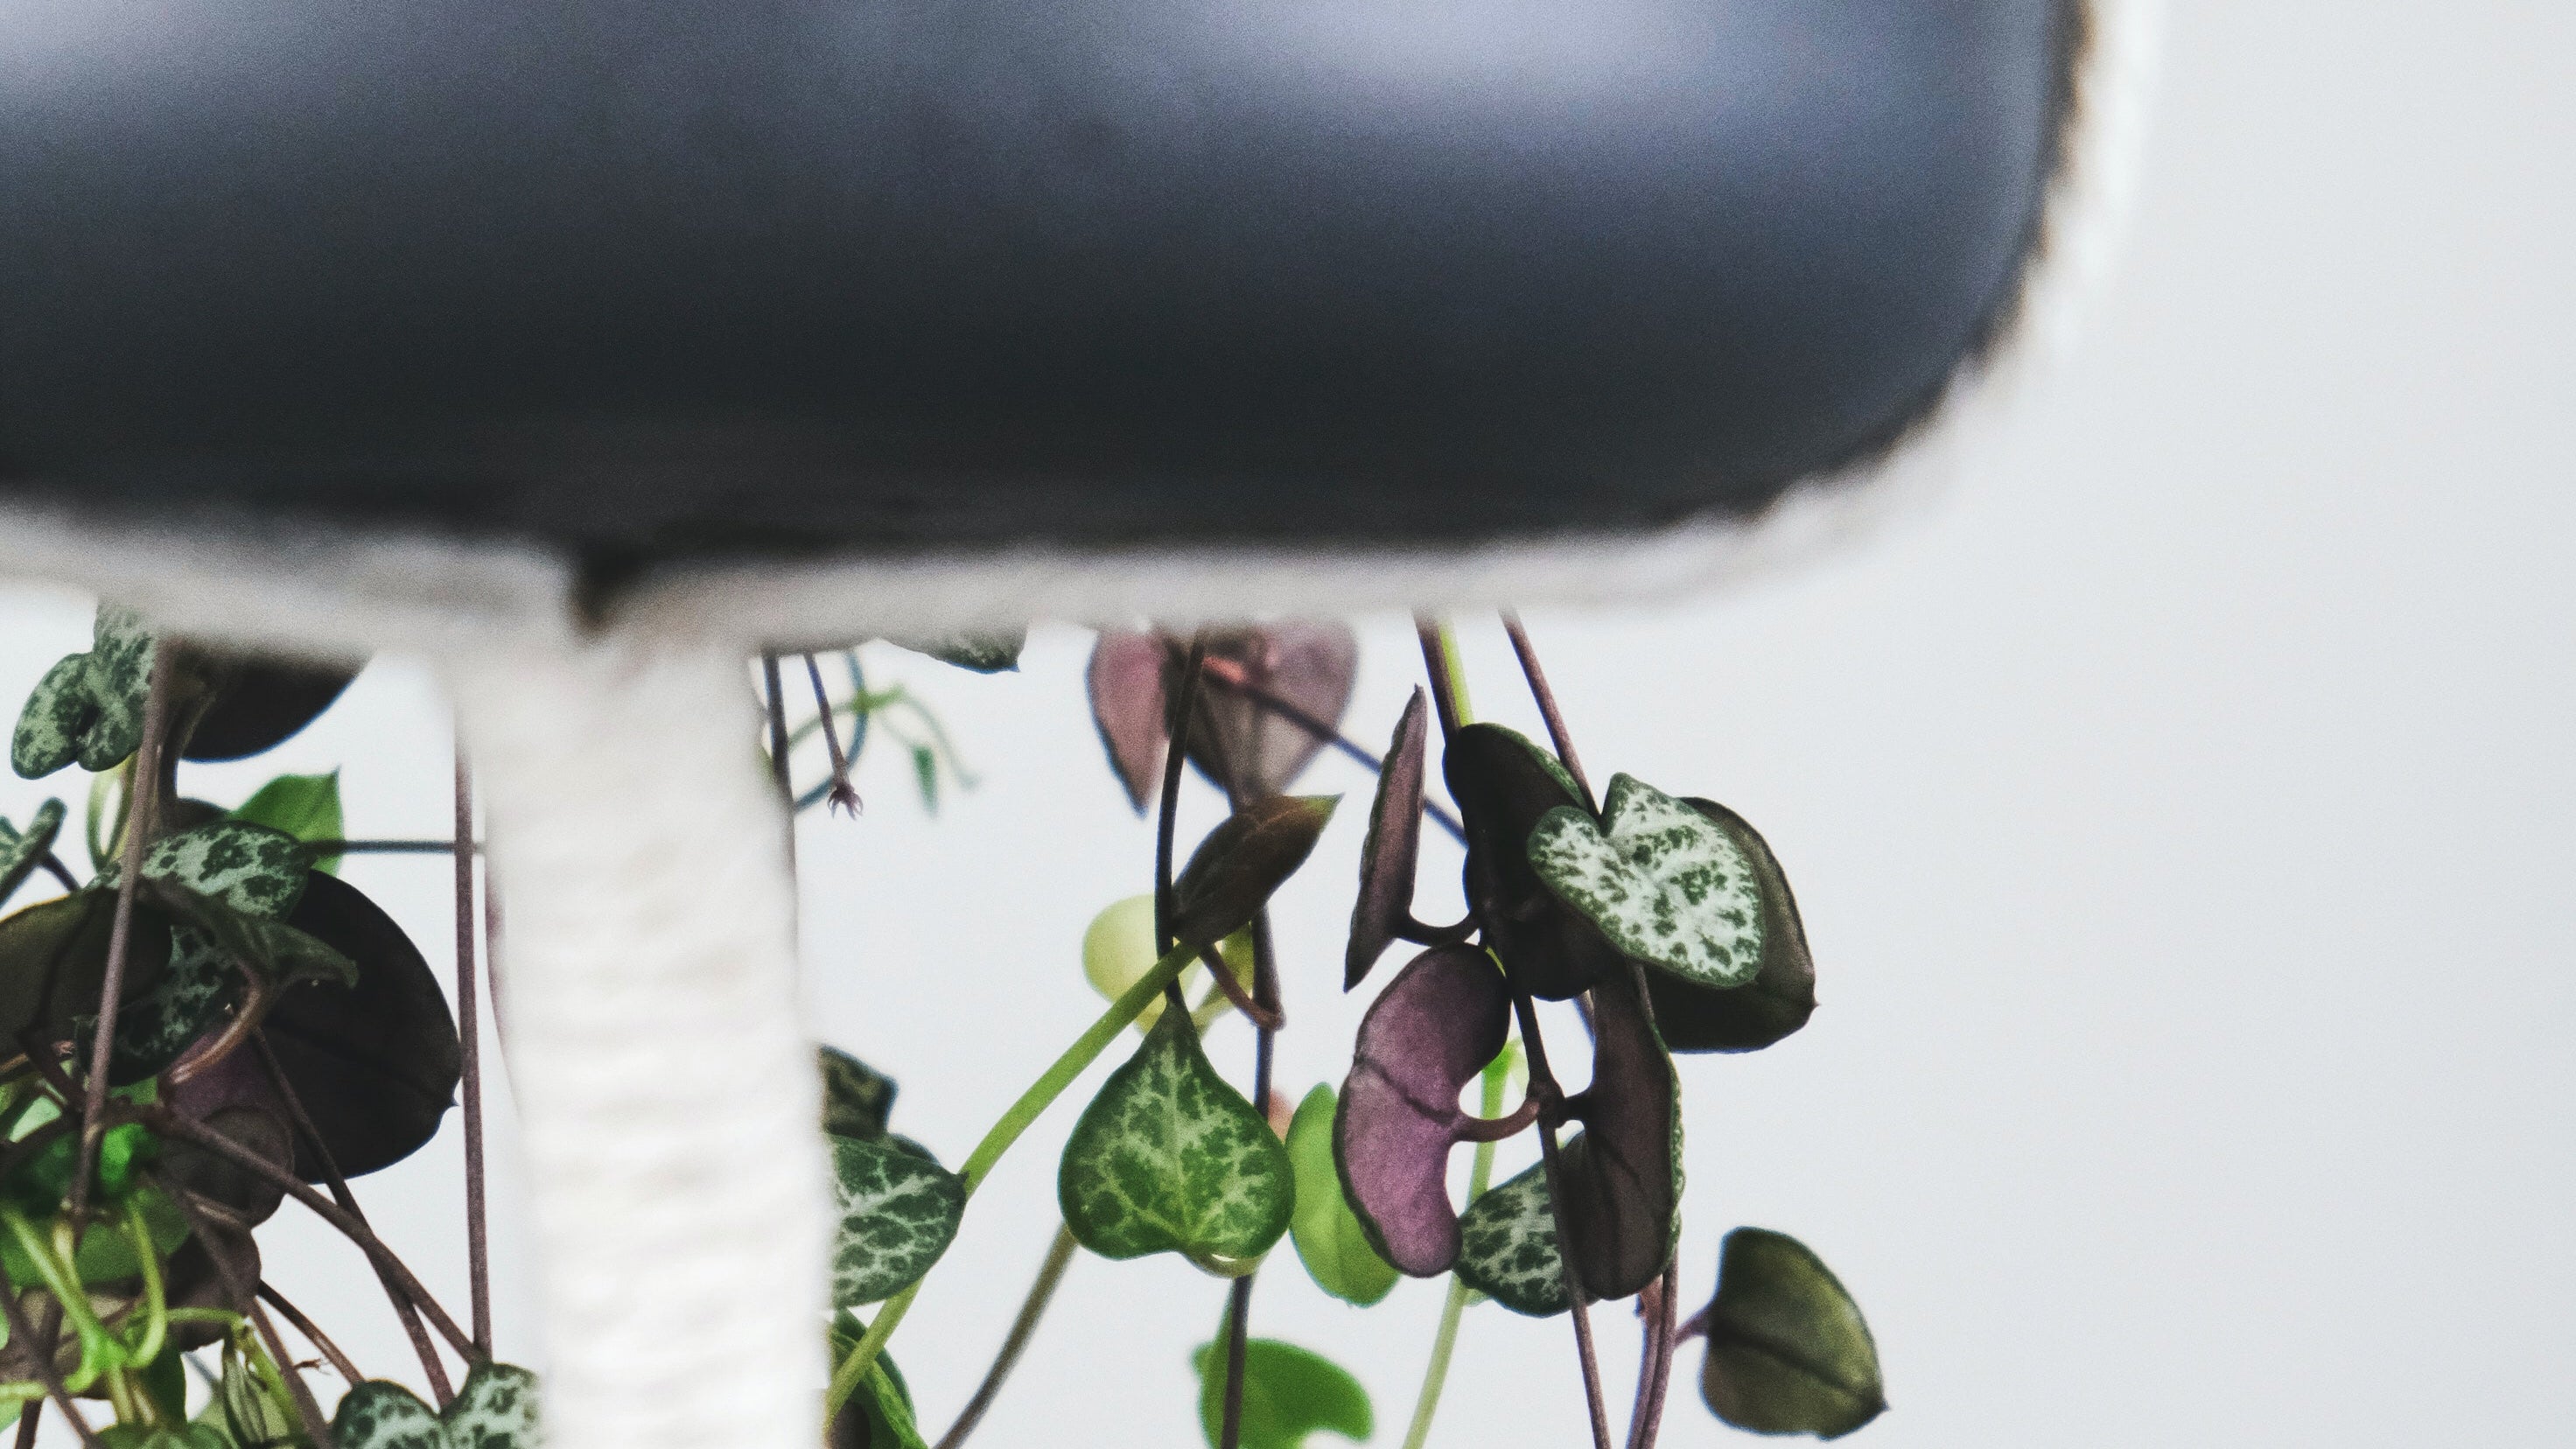 Leuchterpflanze in einem dunklen Hängetopf an einem Makramee-Hänger